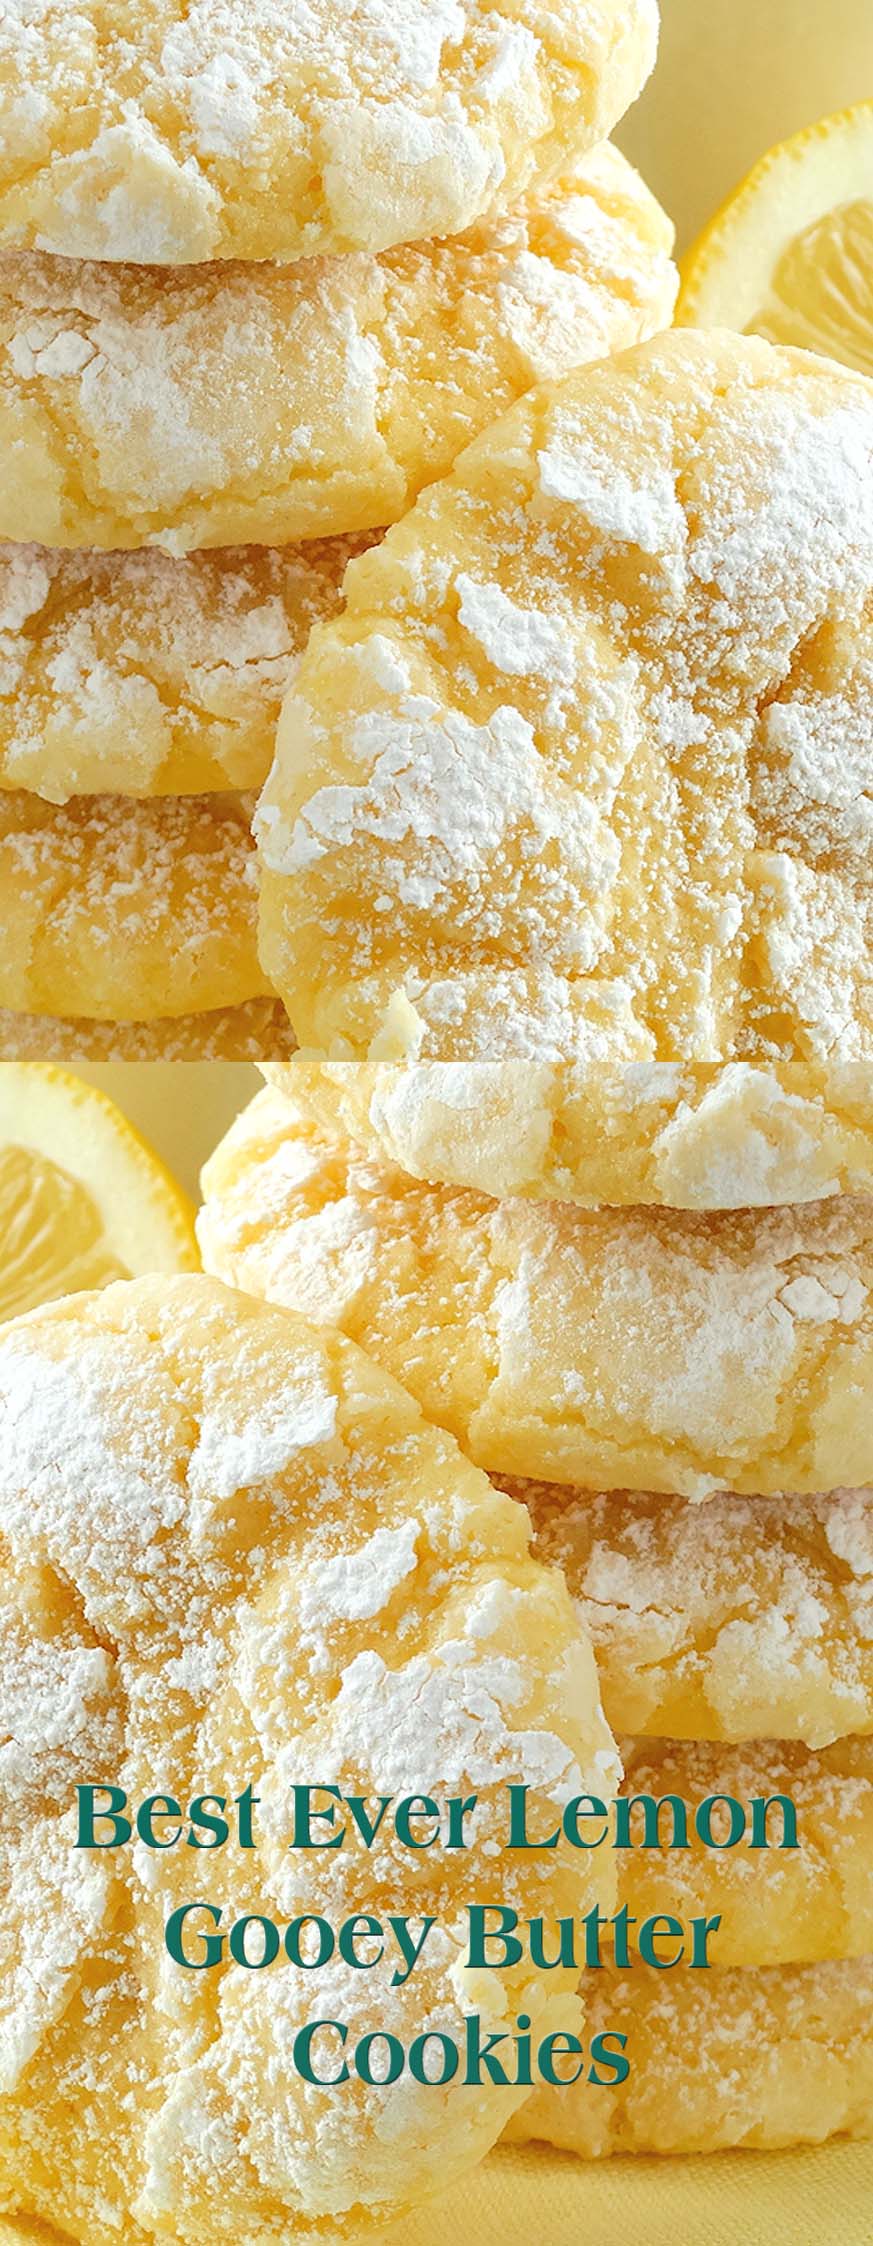 Best Ever Lemon Gooey Butter Cookies